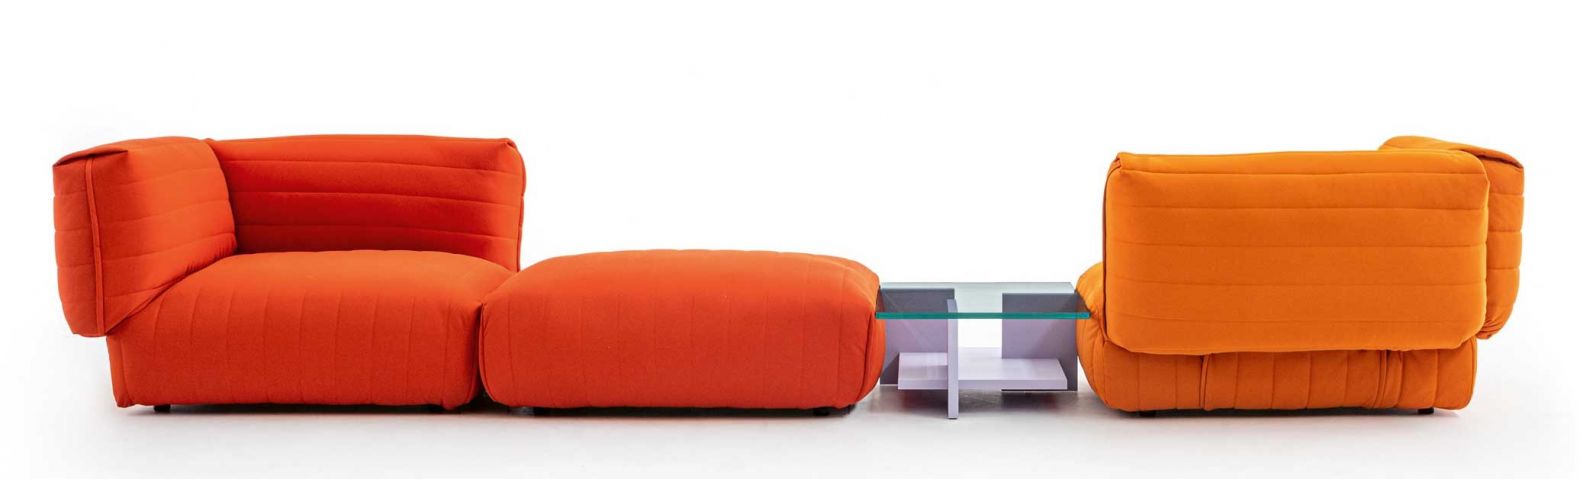 Modular und waschbar: Sofa «Anorak» von Patricia Urquiola, Foto: Alessandro Paderni, MOROSO.IT